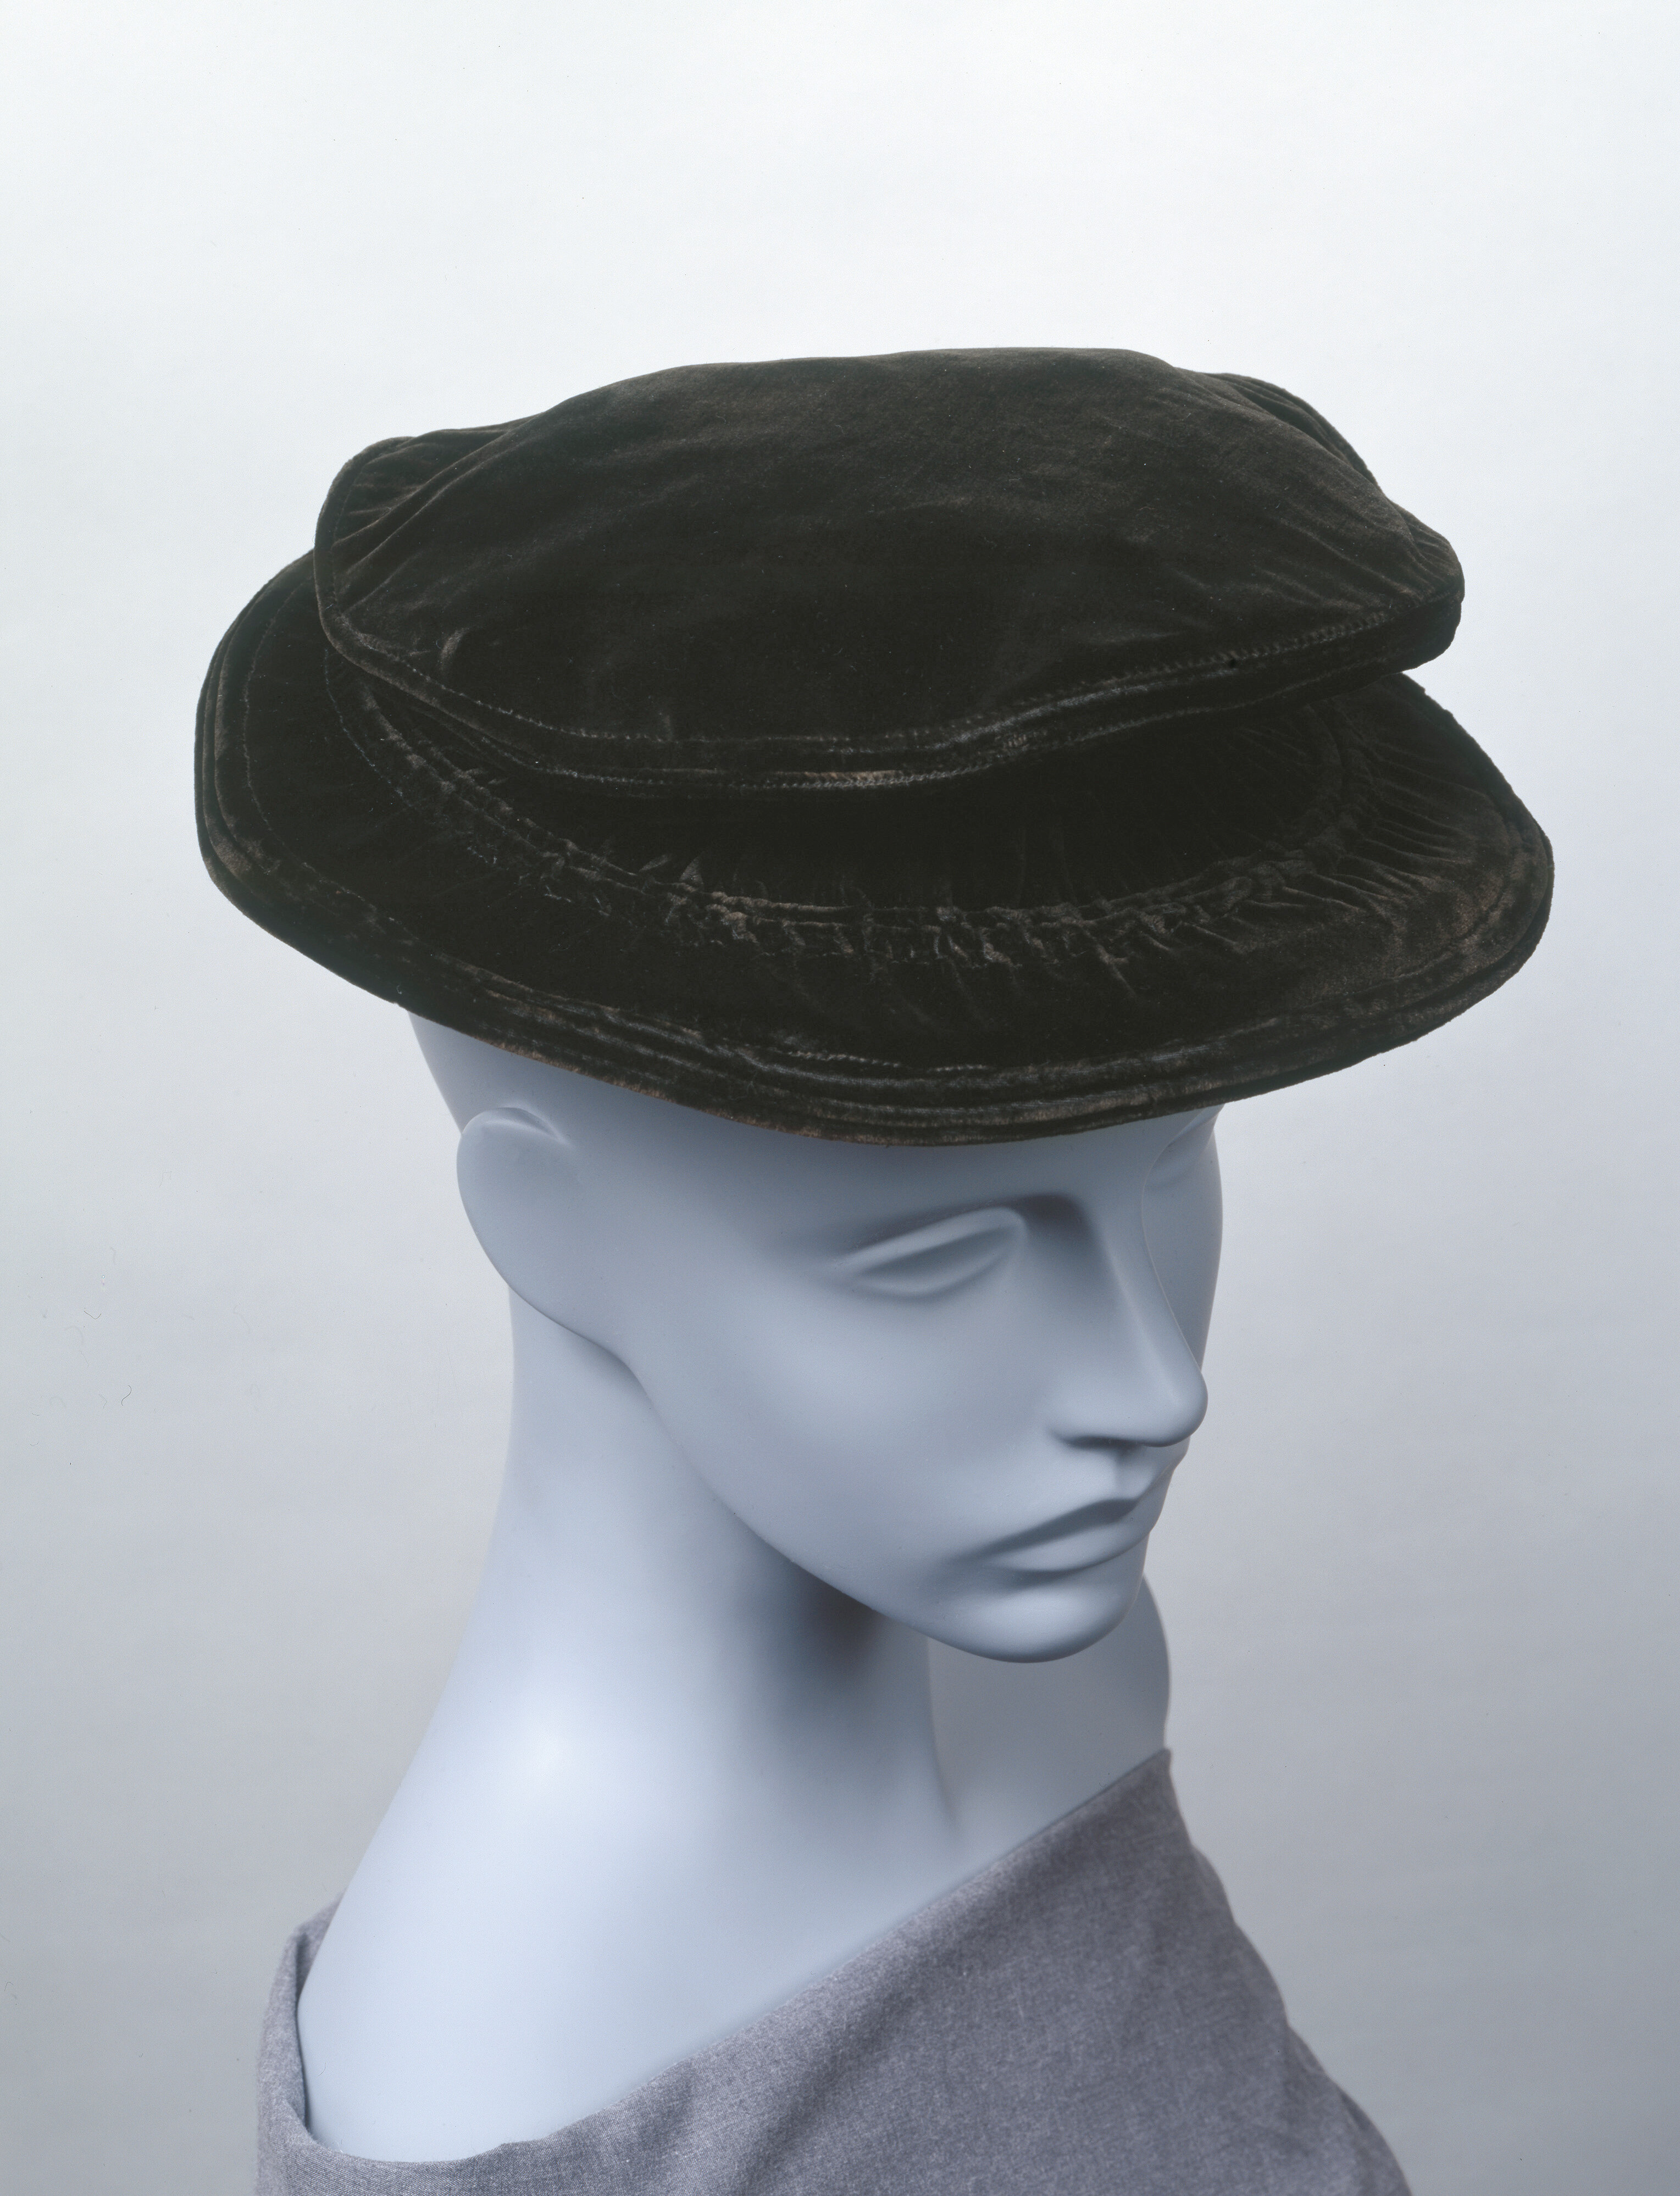 ガブリエル・シャネル 《帽子》 1910年代 神戸ファッション美術館